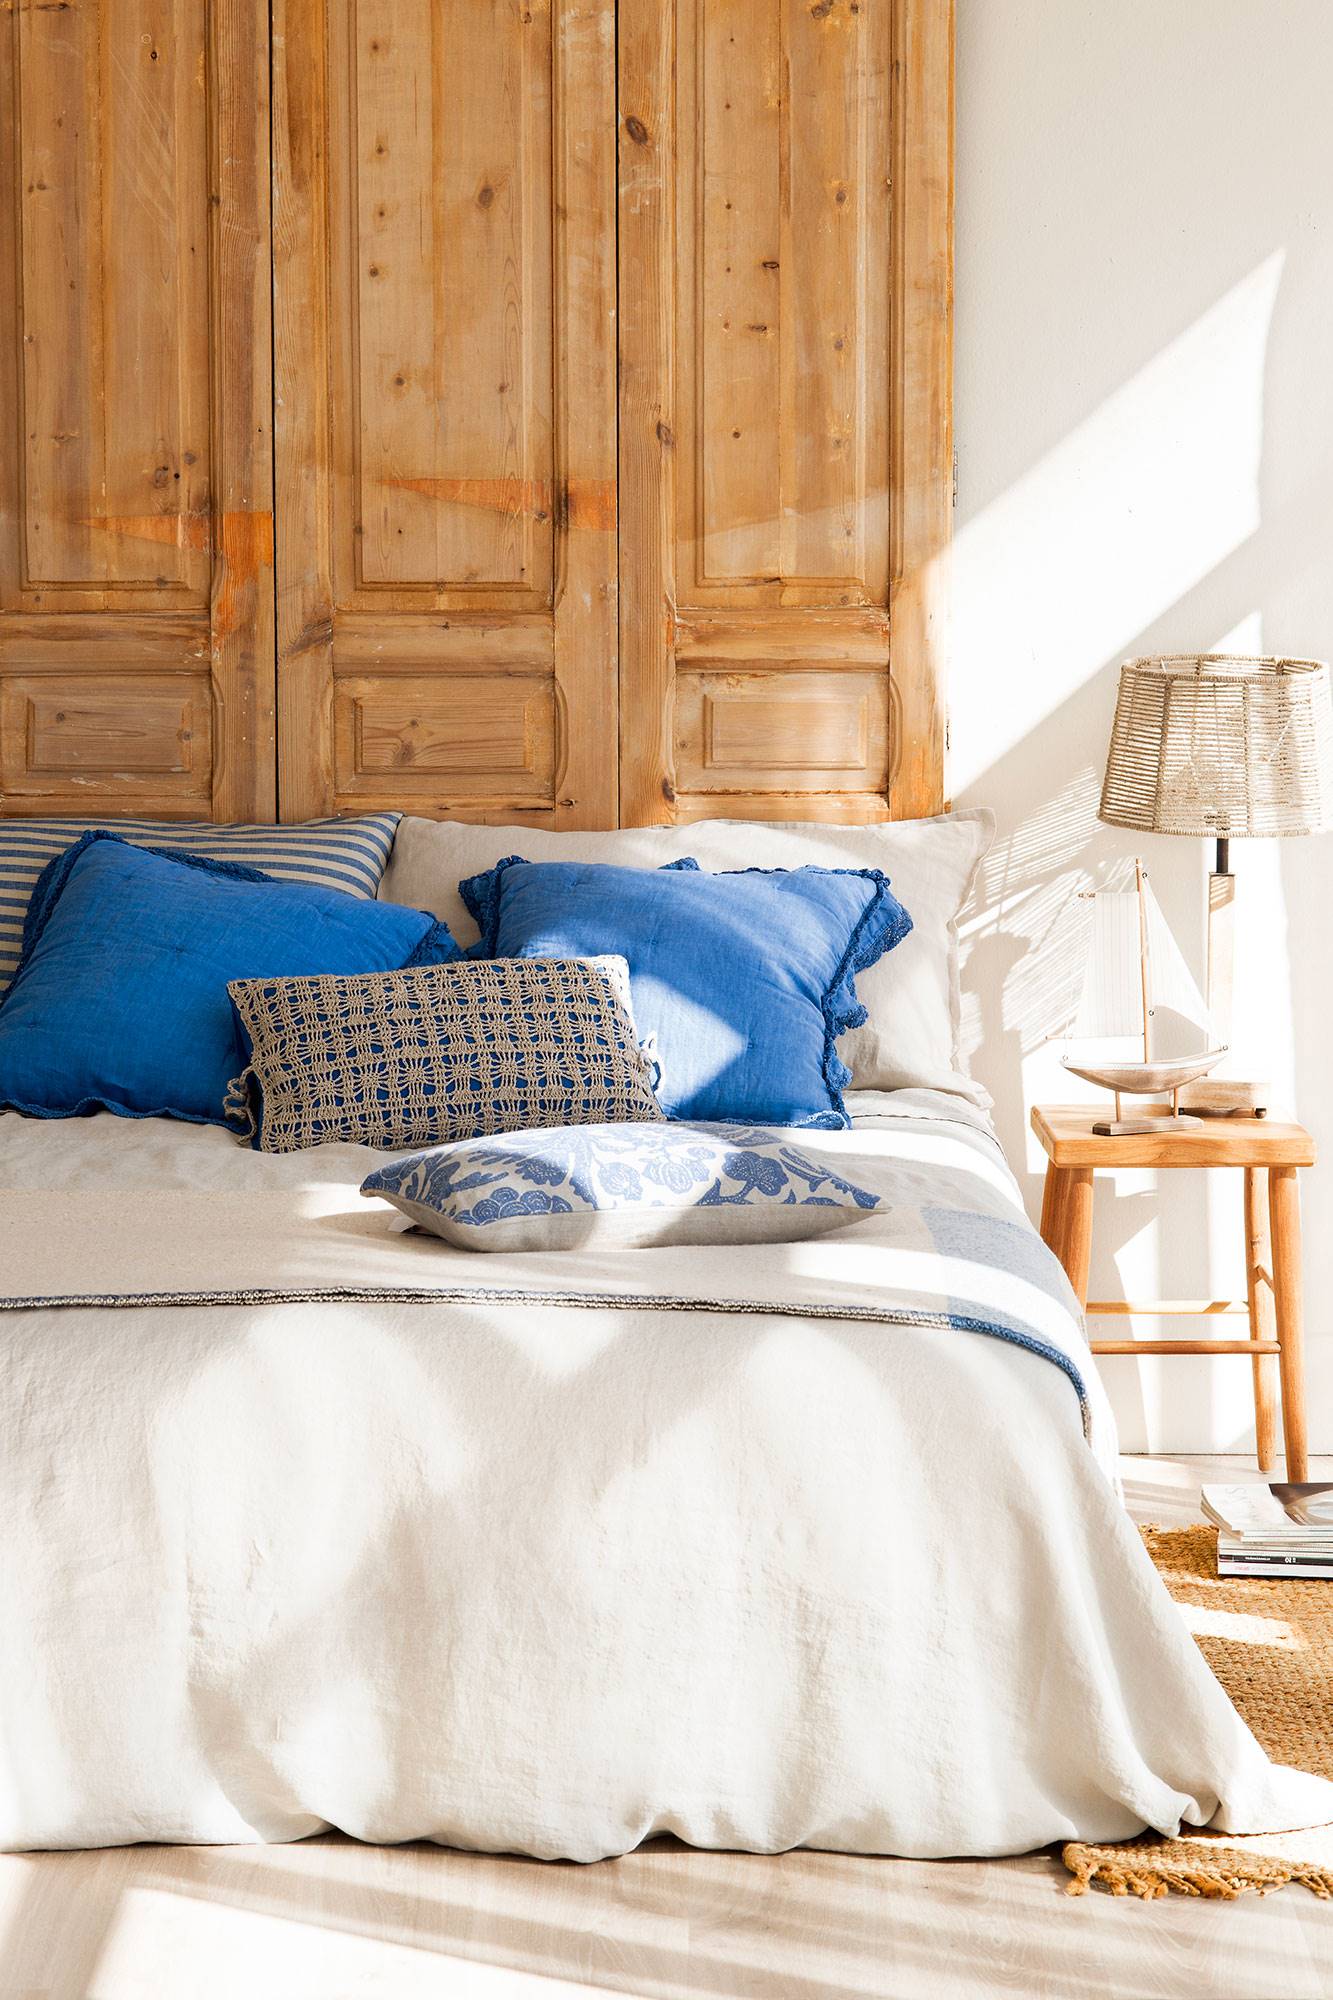 Semitoma de dormitorio con cabecero hecho con puerta de madera restaurada y ropa de cama blanca y azul